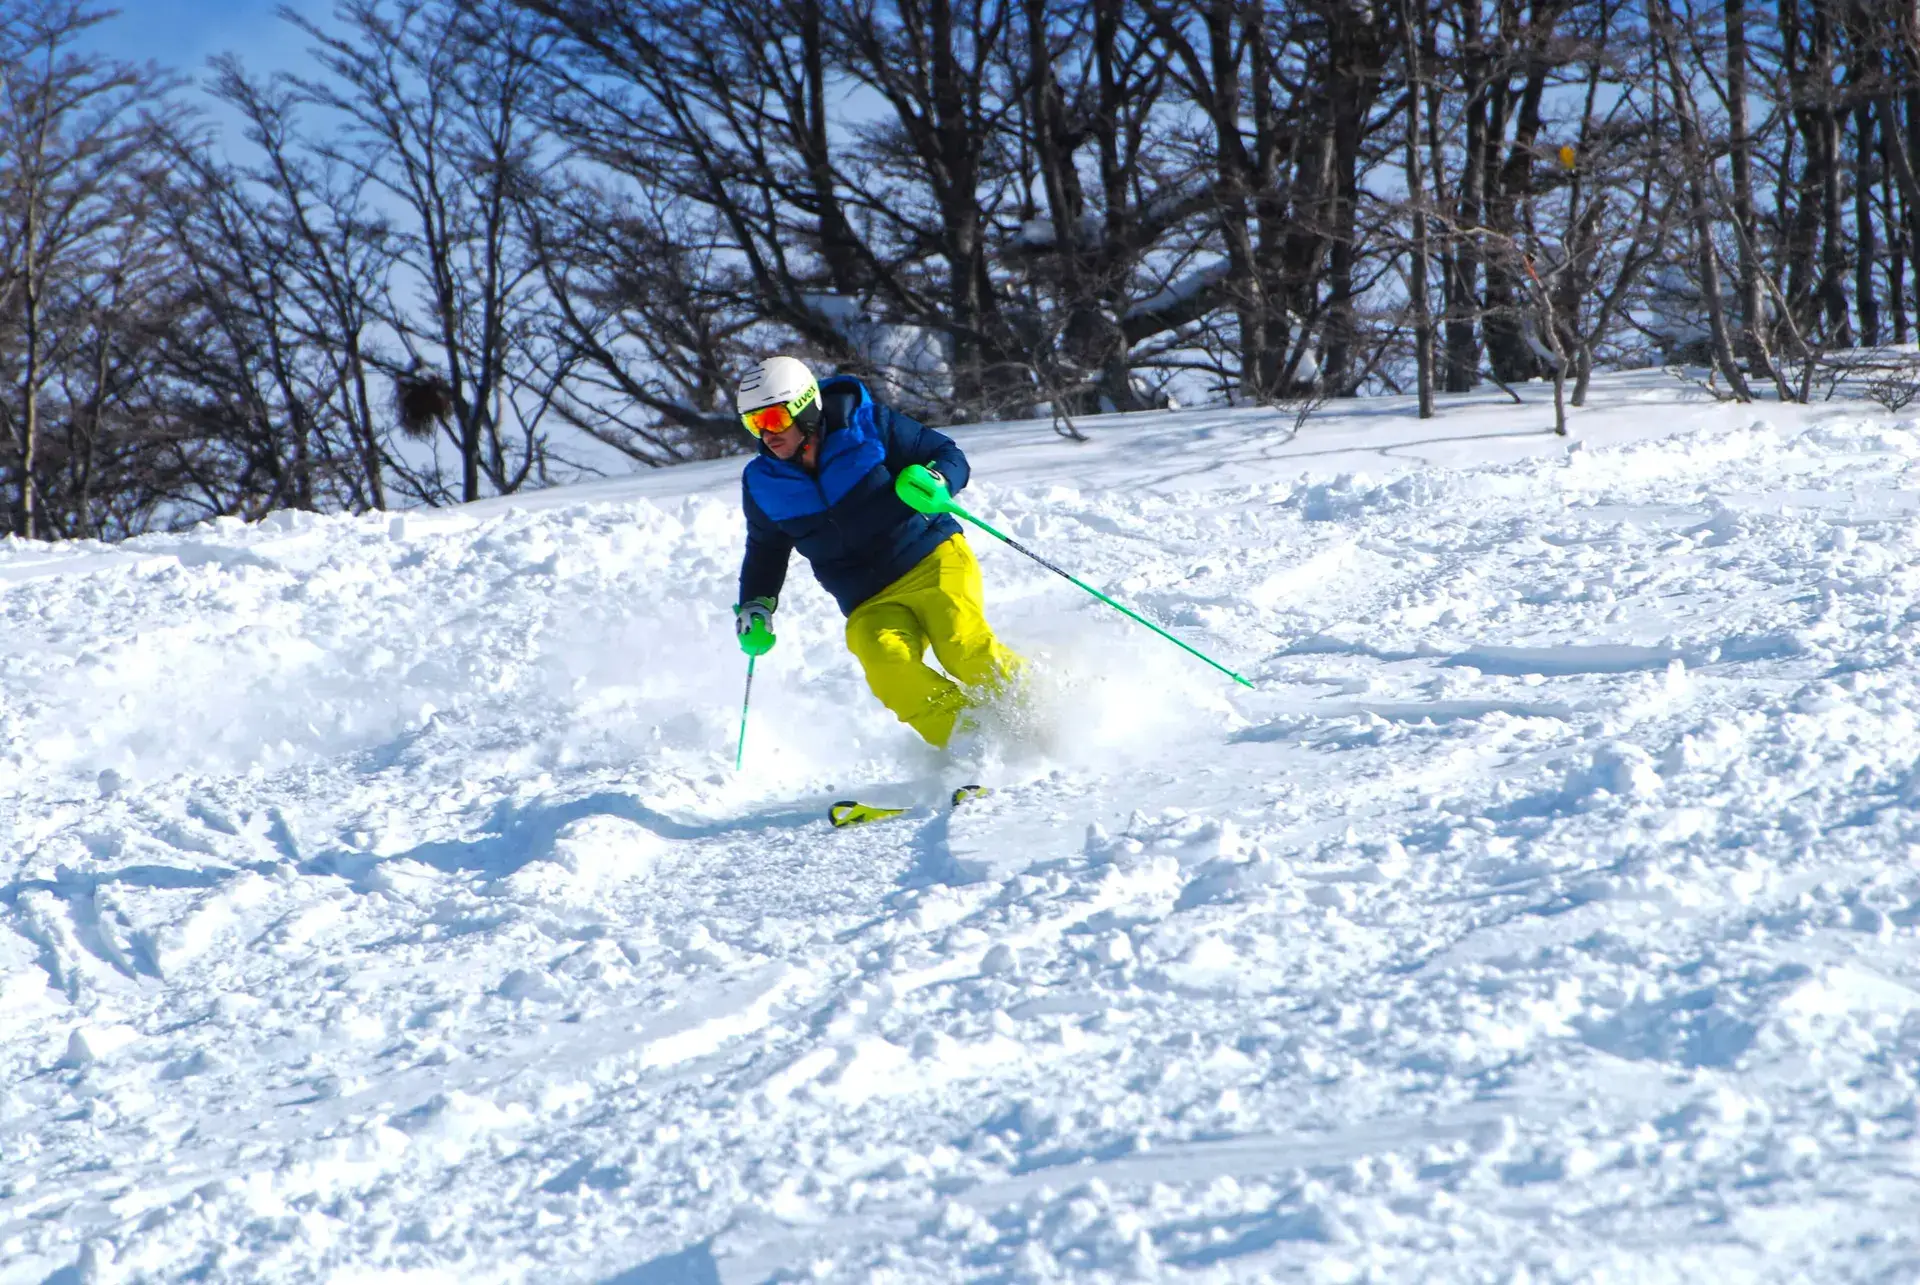 Esquiador en nieve polvo con esquís de slalom puntas arriba